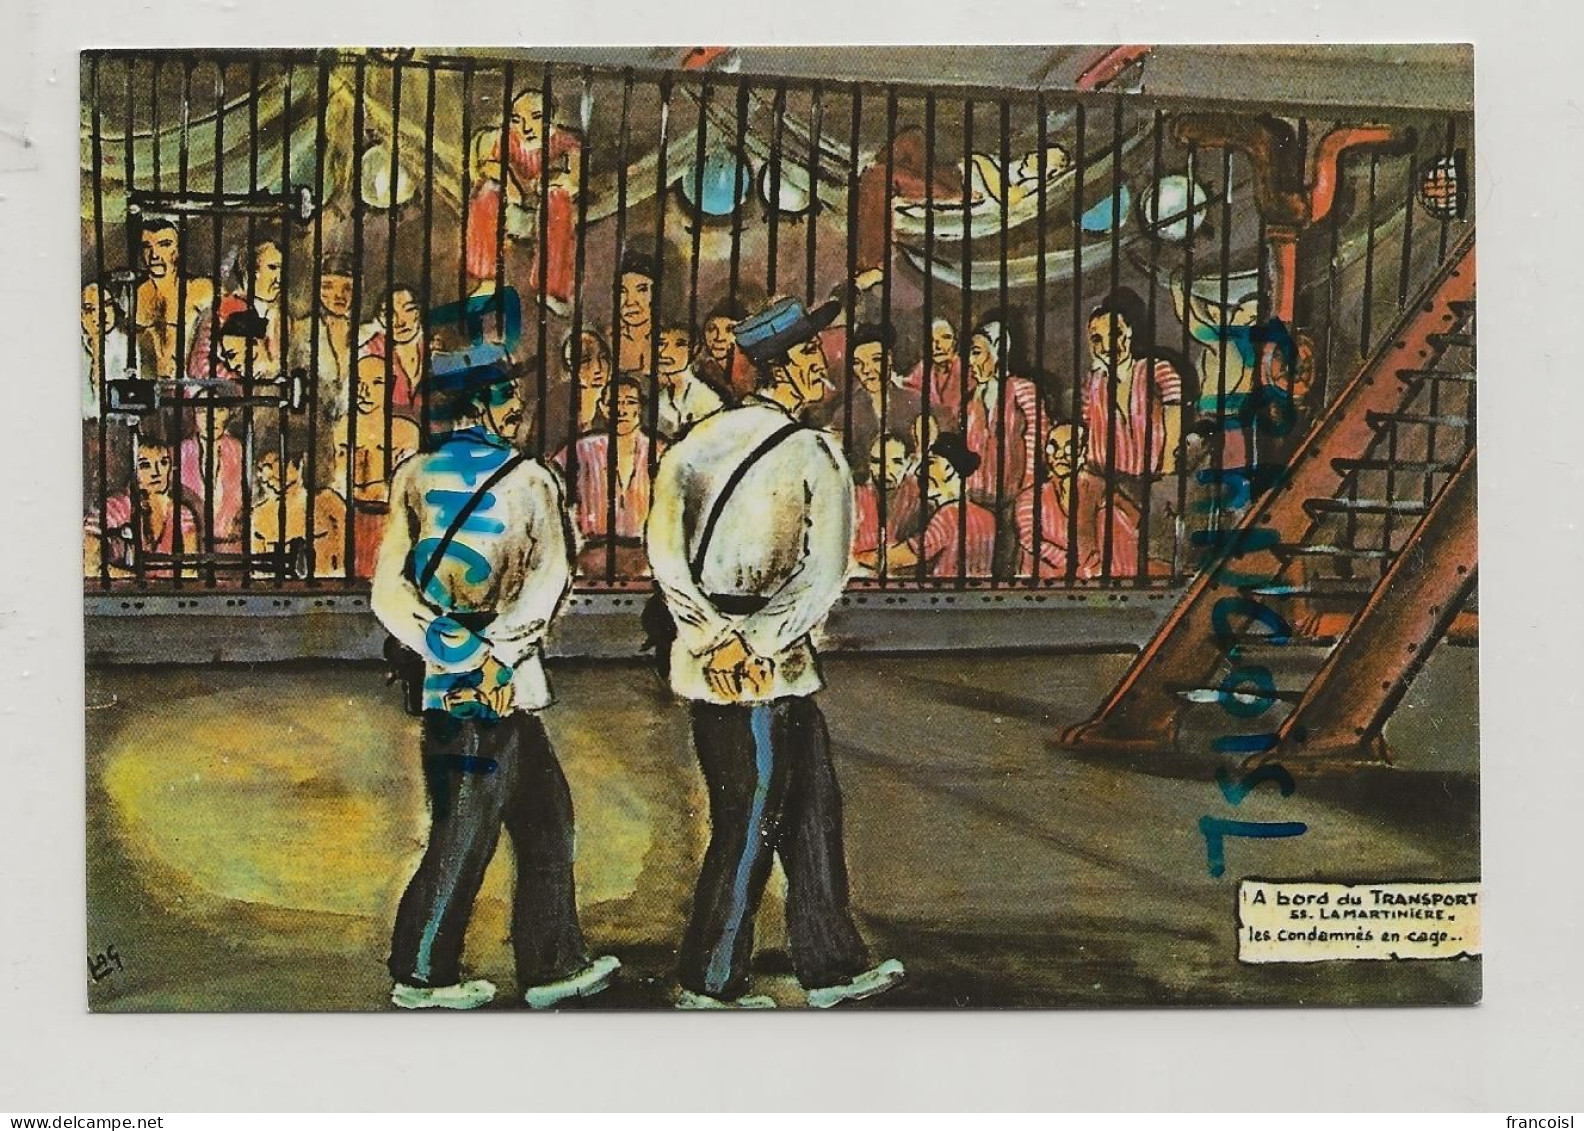 Guyane Française. Oeuvre Du Peintre "Forçat" Lagrange. "A Bord Du Transport Ss "La Martinière" - Prison